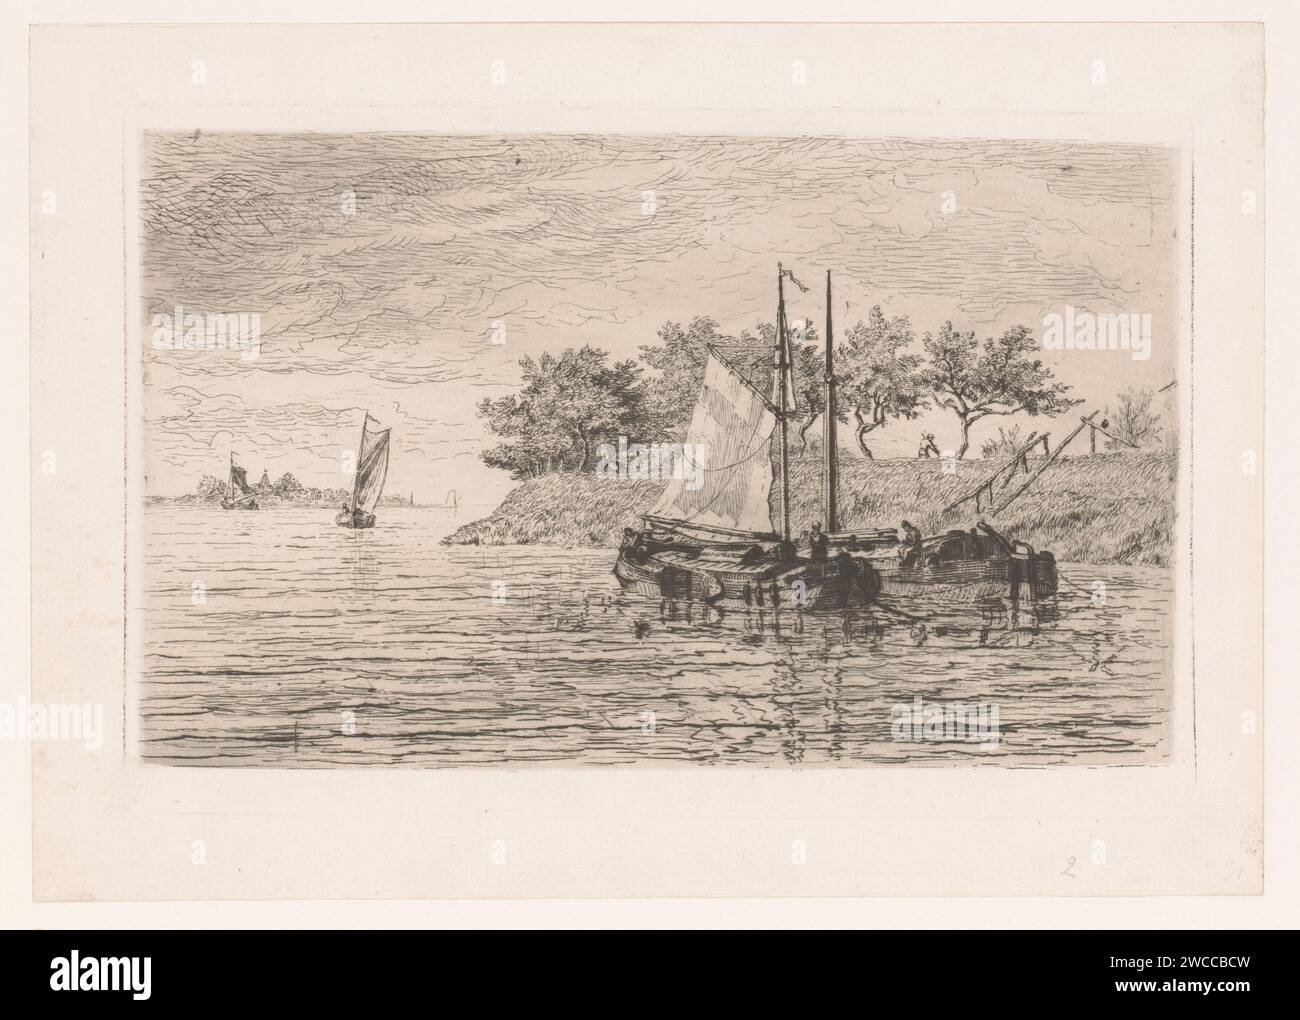 Segelboote auf einem Fluss, auf dem Deich mähen ein Mann, Edgar Alfred Baes, 1847 - 1909 Druckpapier Radierung / Trockenpunkt Segelschiff, Segelboot. flussufer. fluss Stockfoto